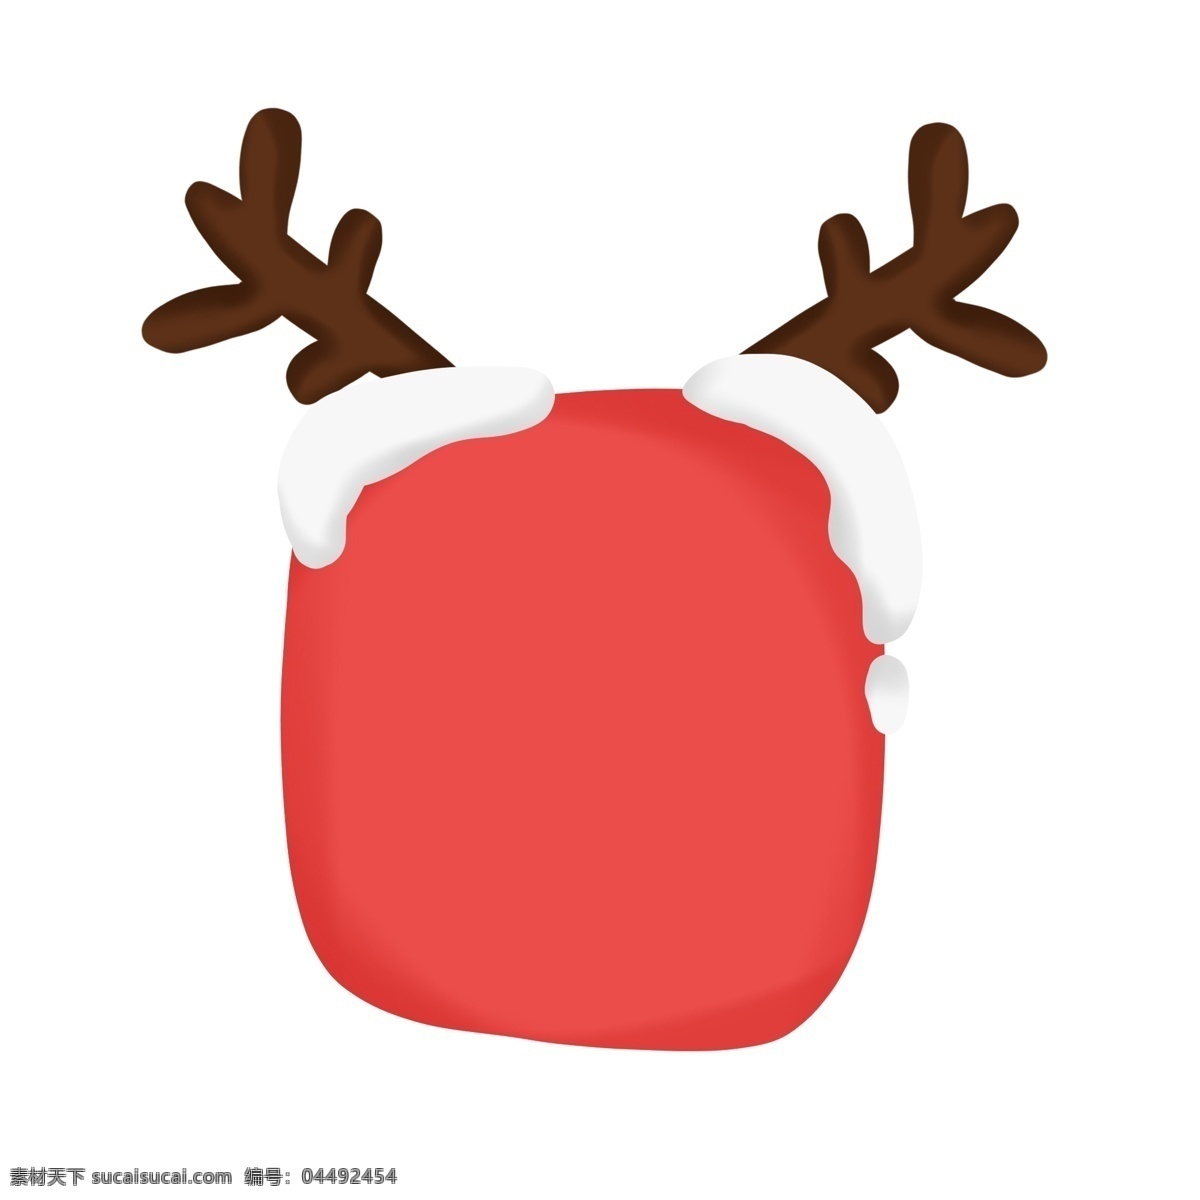 圣诞节 手绘 可爱 圣诞 边框 对话框 元素 可爱边框 麋鹿 可爱对话框 圣诞节对话框 圣诞节边框 鹿 圣诞鹿 圣诞装饰物 圣诞节装饰 圣诞树装饰